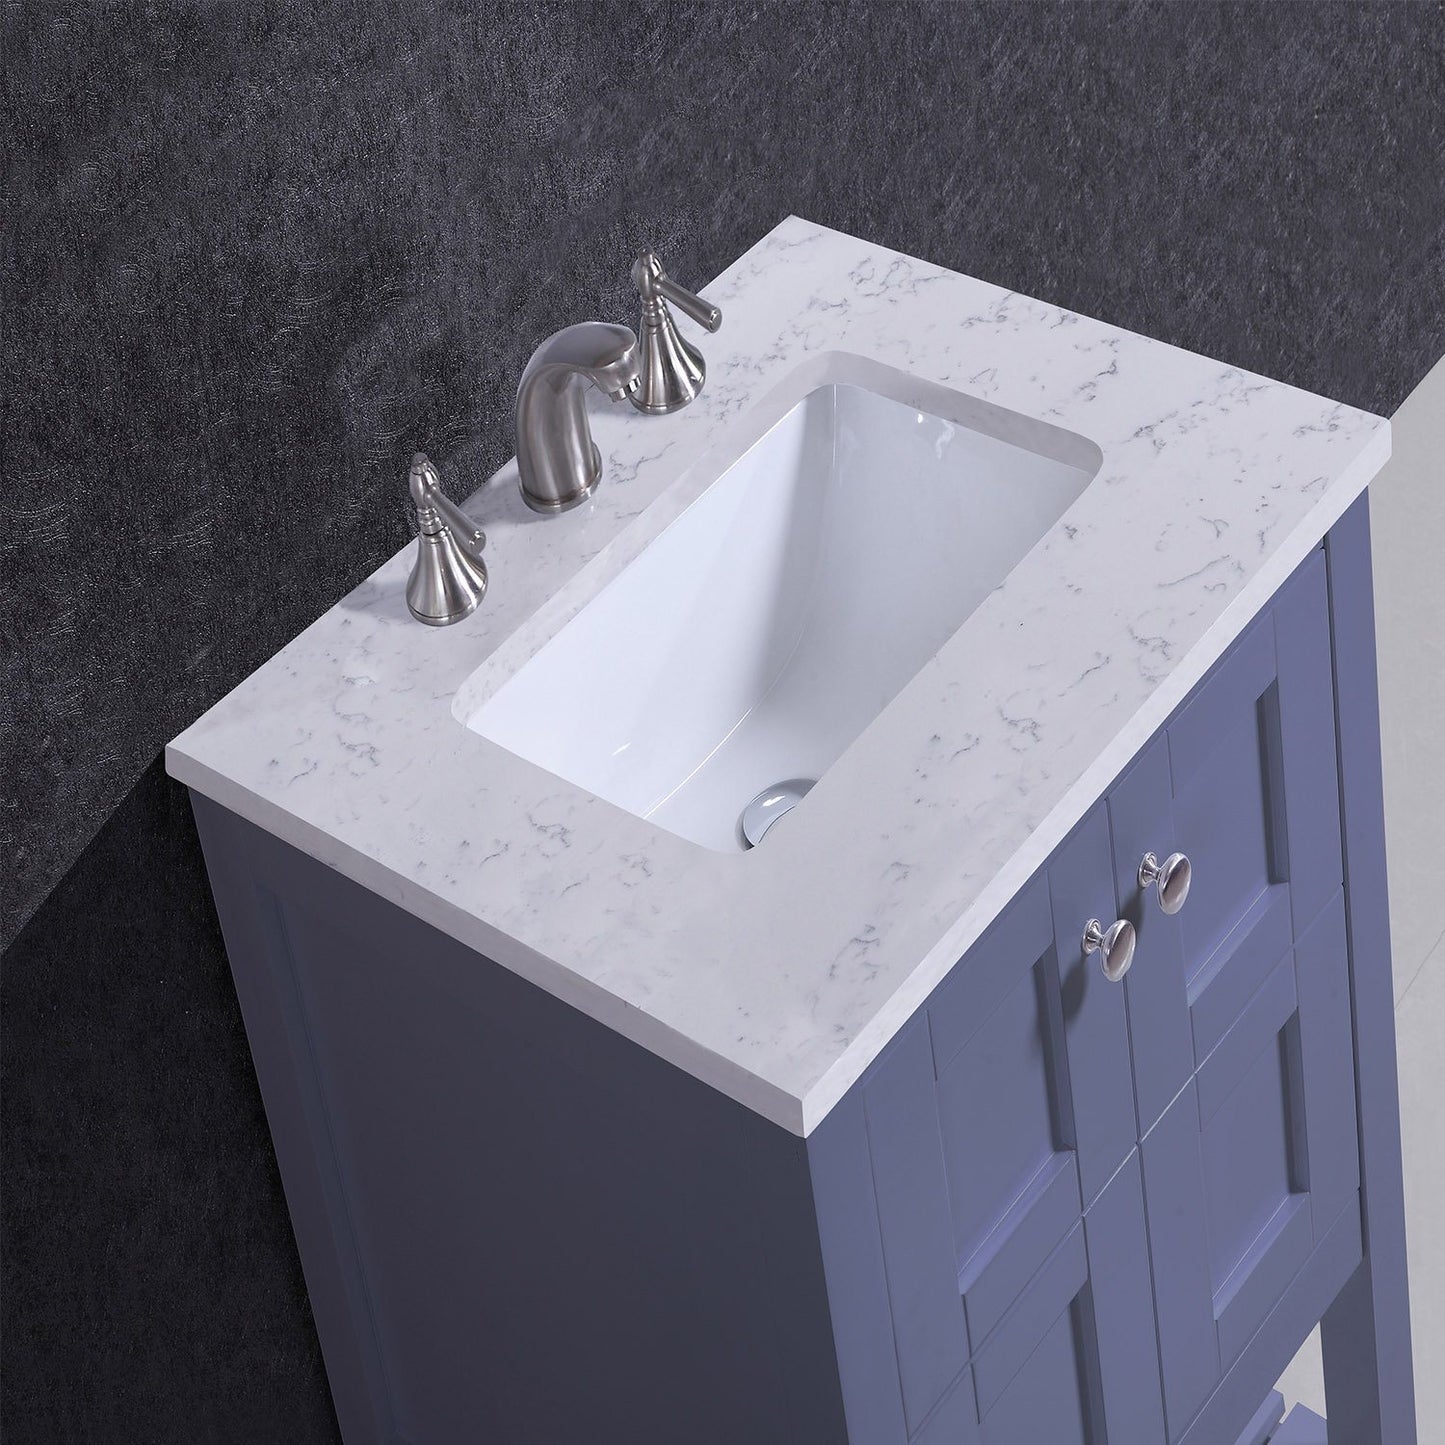 Eviva Glamor 24 in. Grey Bathroom Cabinet with Marble Counter-top and Undermount Porcelian Sink - Luxe Bathroom Vanities Luxury Bathroom Fixtures Bathroom Furniture